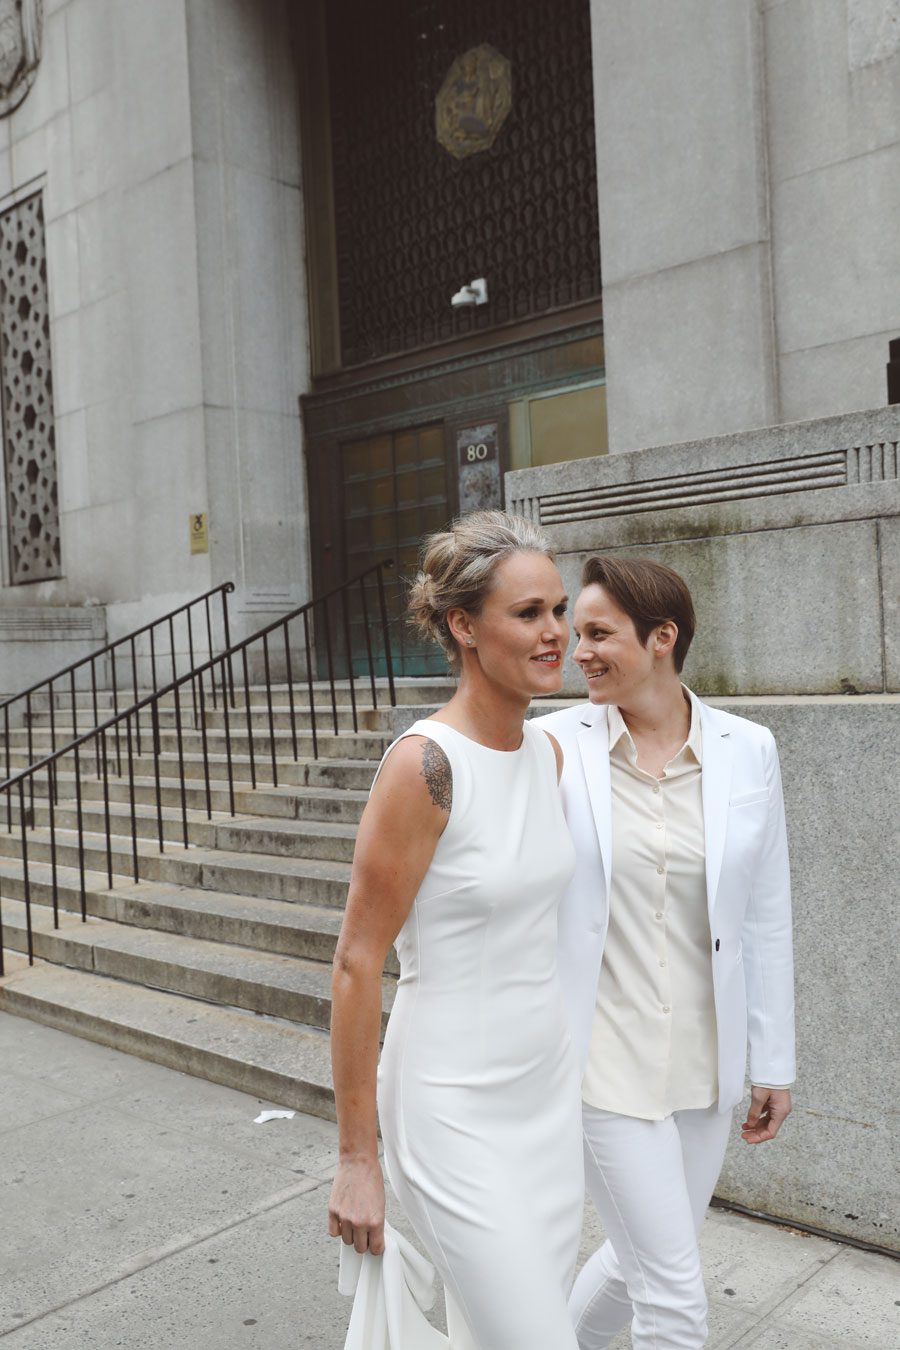 NY City Hall wedding